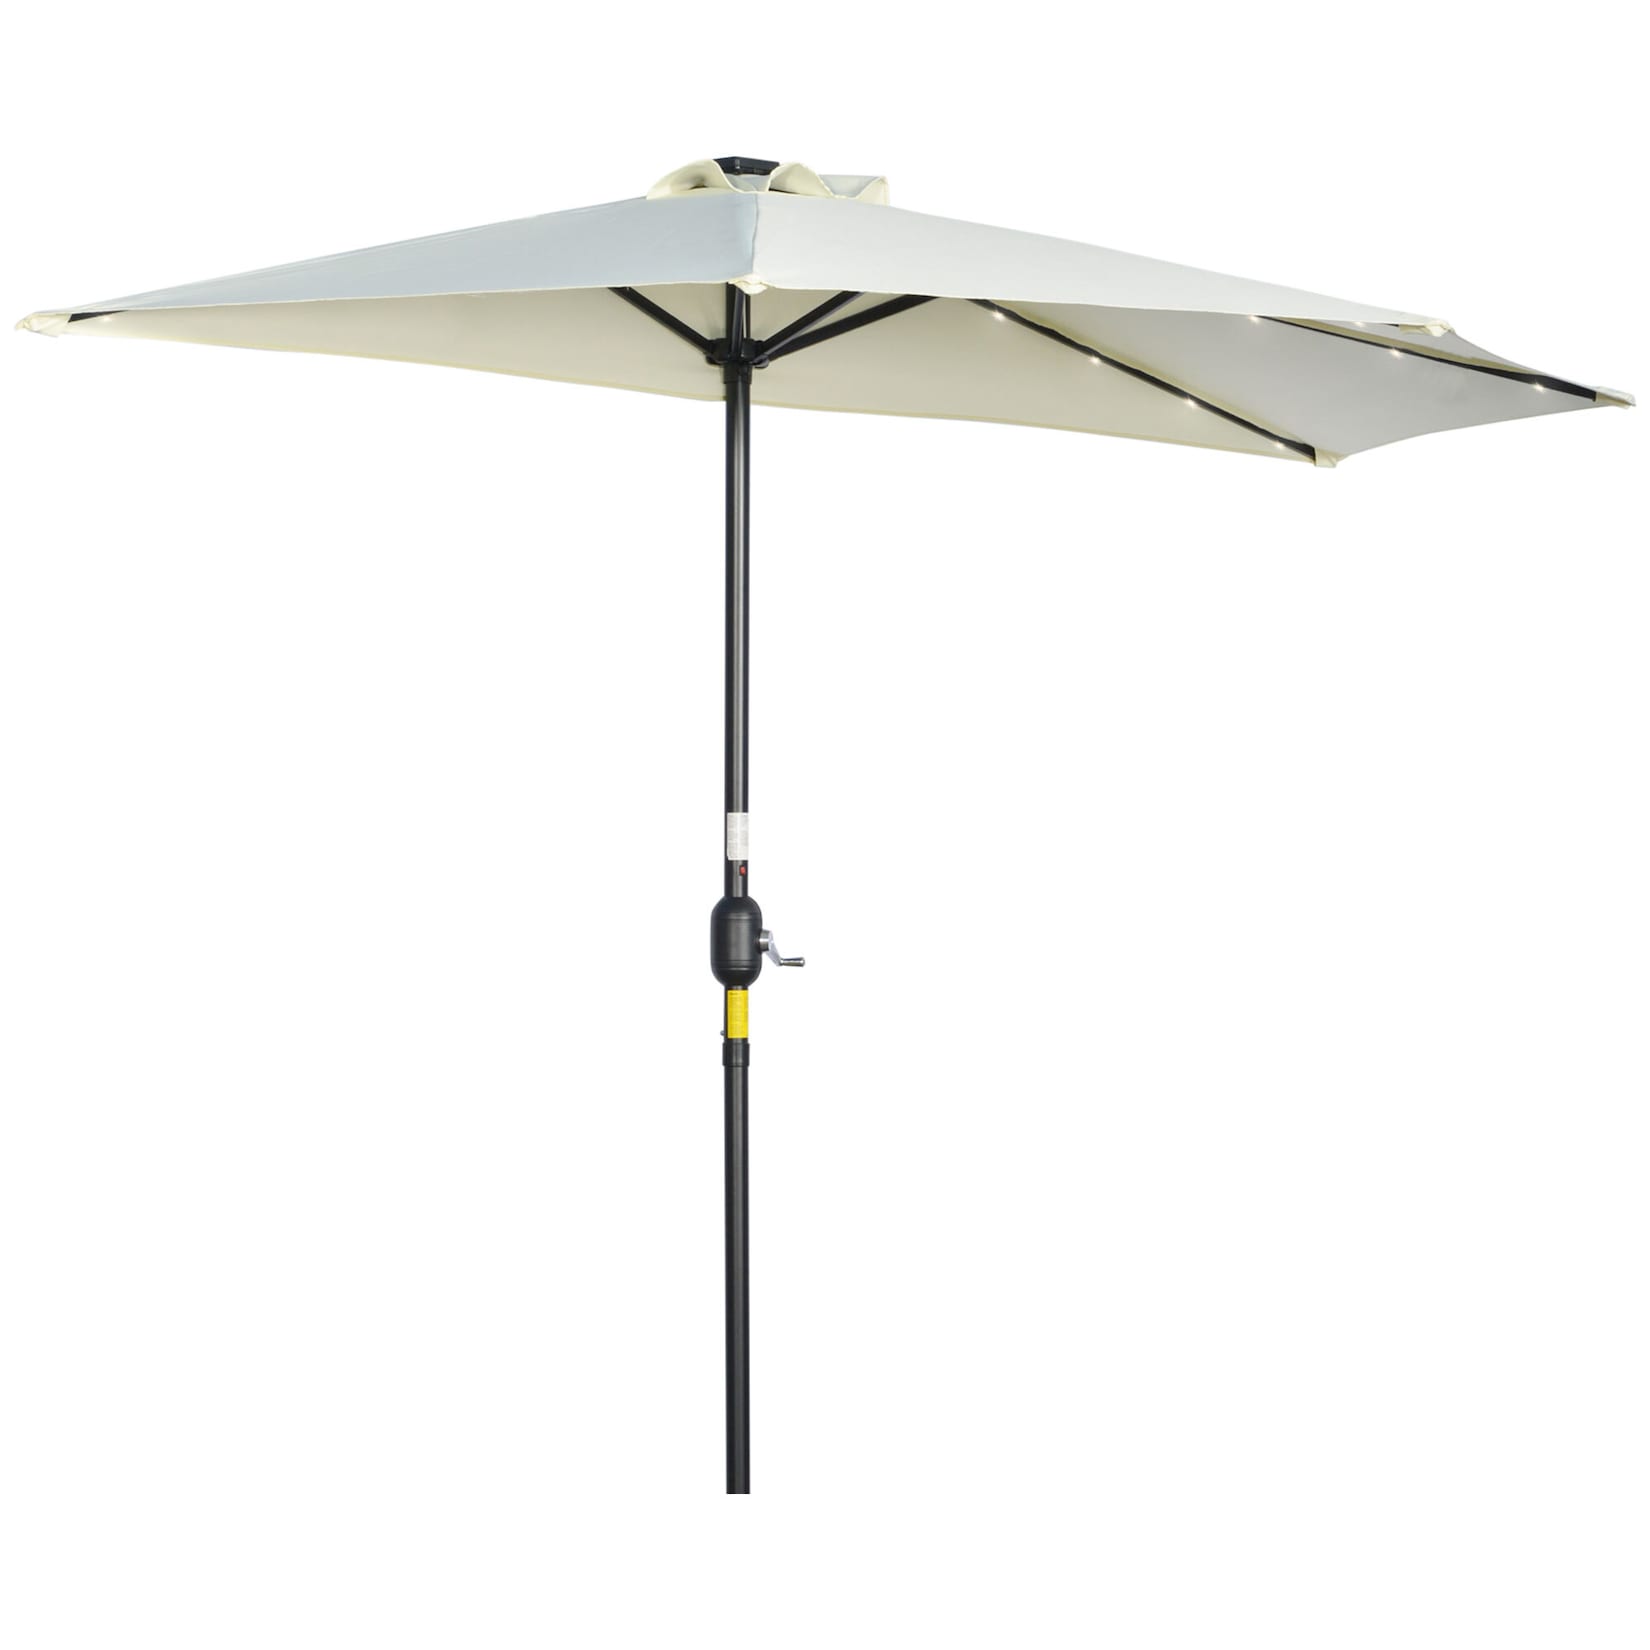 Outsunny Halbrunder Regenschirm mit LED-Beleuchtung und Handkurbel beige 270L x 135B x 240H cm